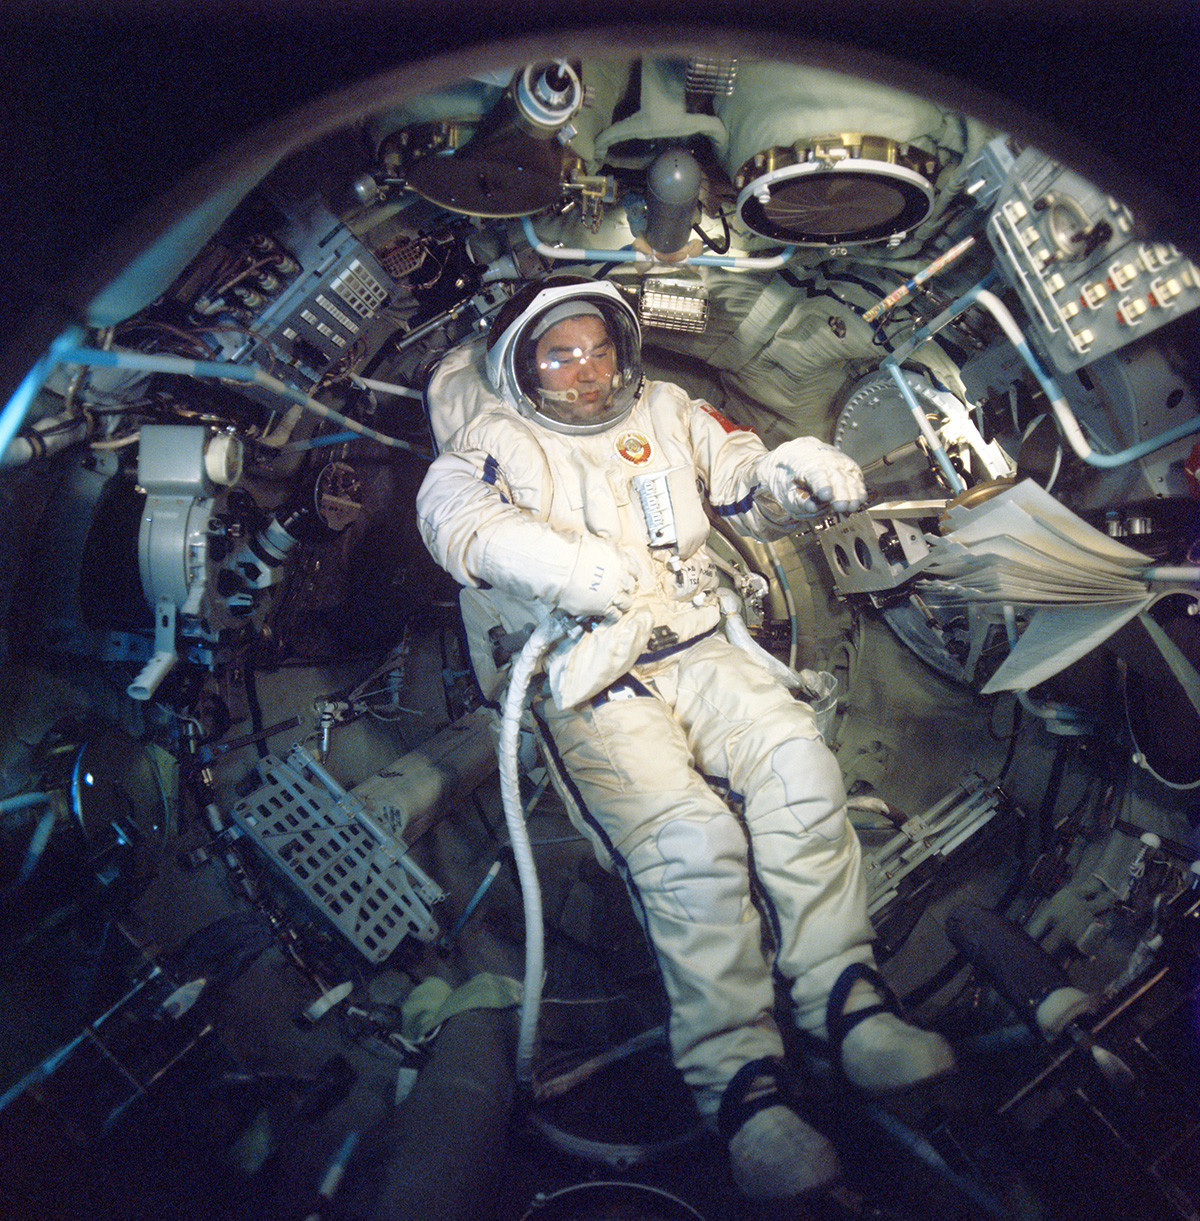 Sovjetski kozmonavt Georgij Grečko (letalski inženir) na krovu vesoljskega kompleksa 